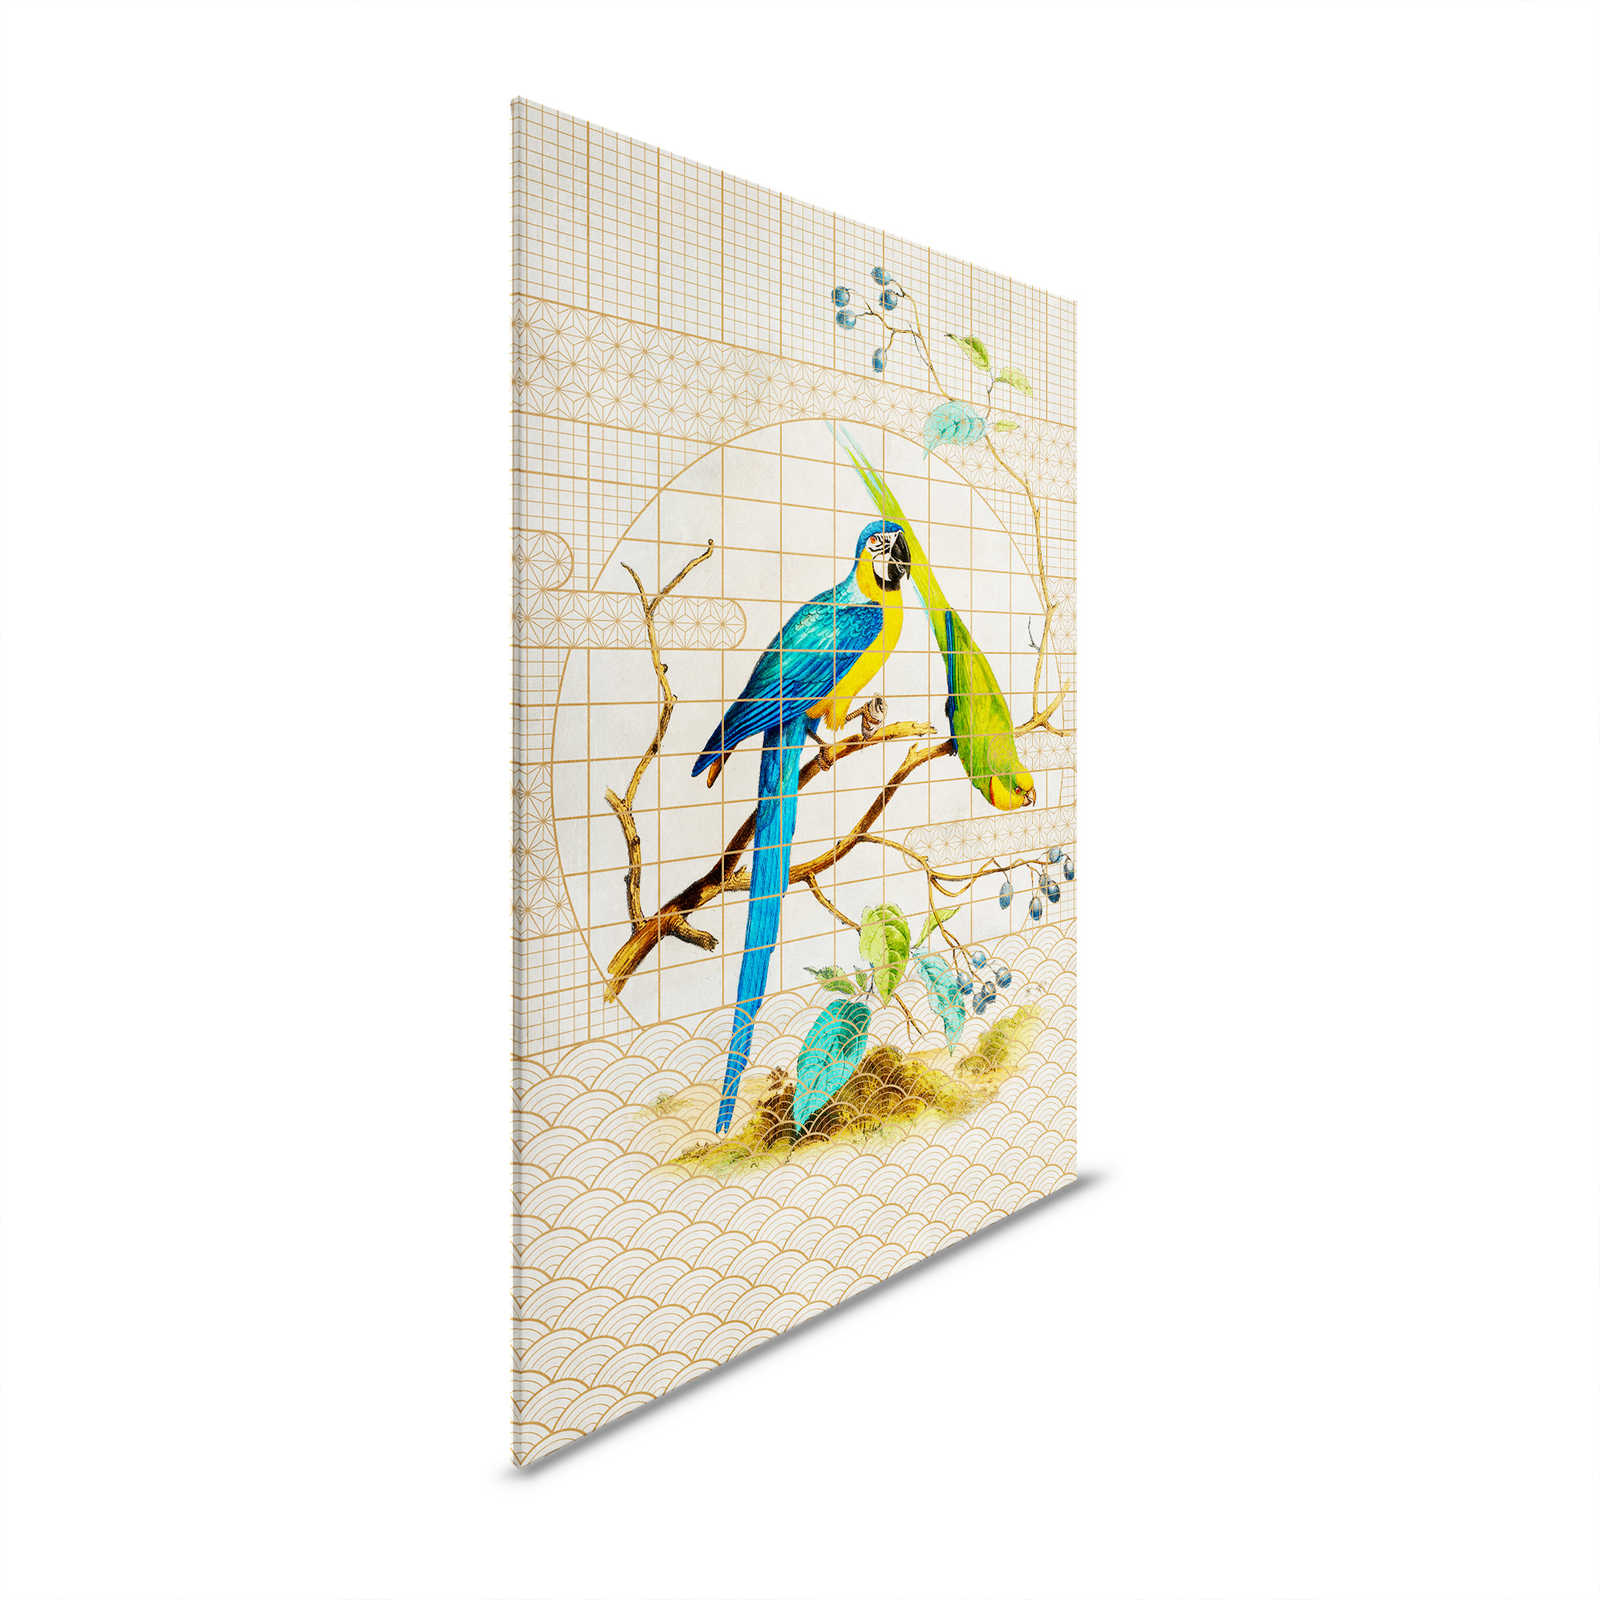 Voliera 3 - Quadro su tela con pappagalli e motivi dorati in stile vintage - 1,20 m x 0,80 m
